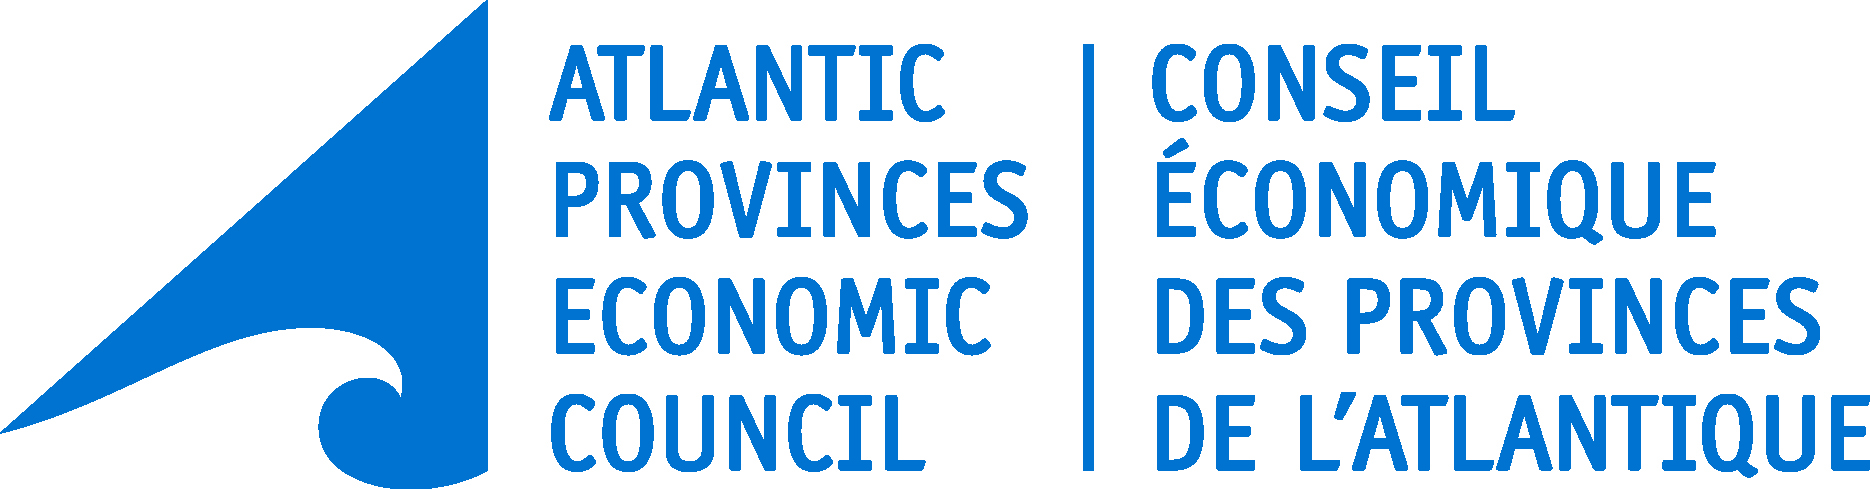 Atlantic Provinces Economic Council (APEC)